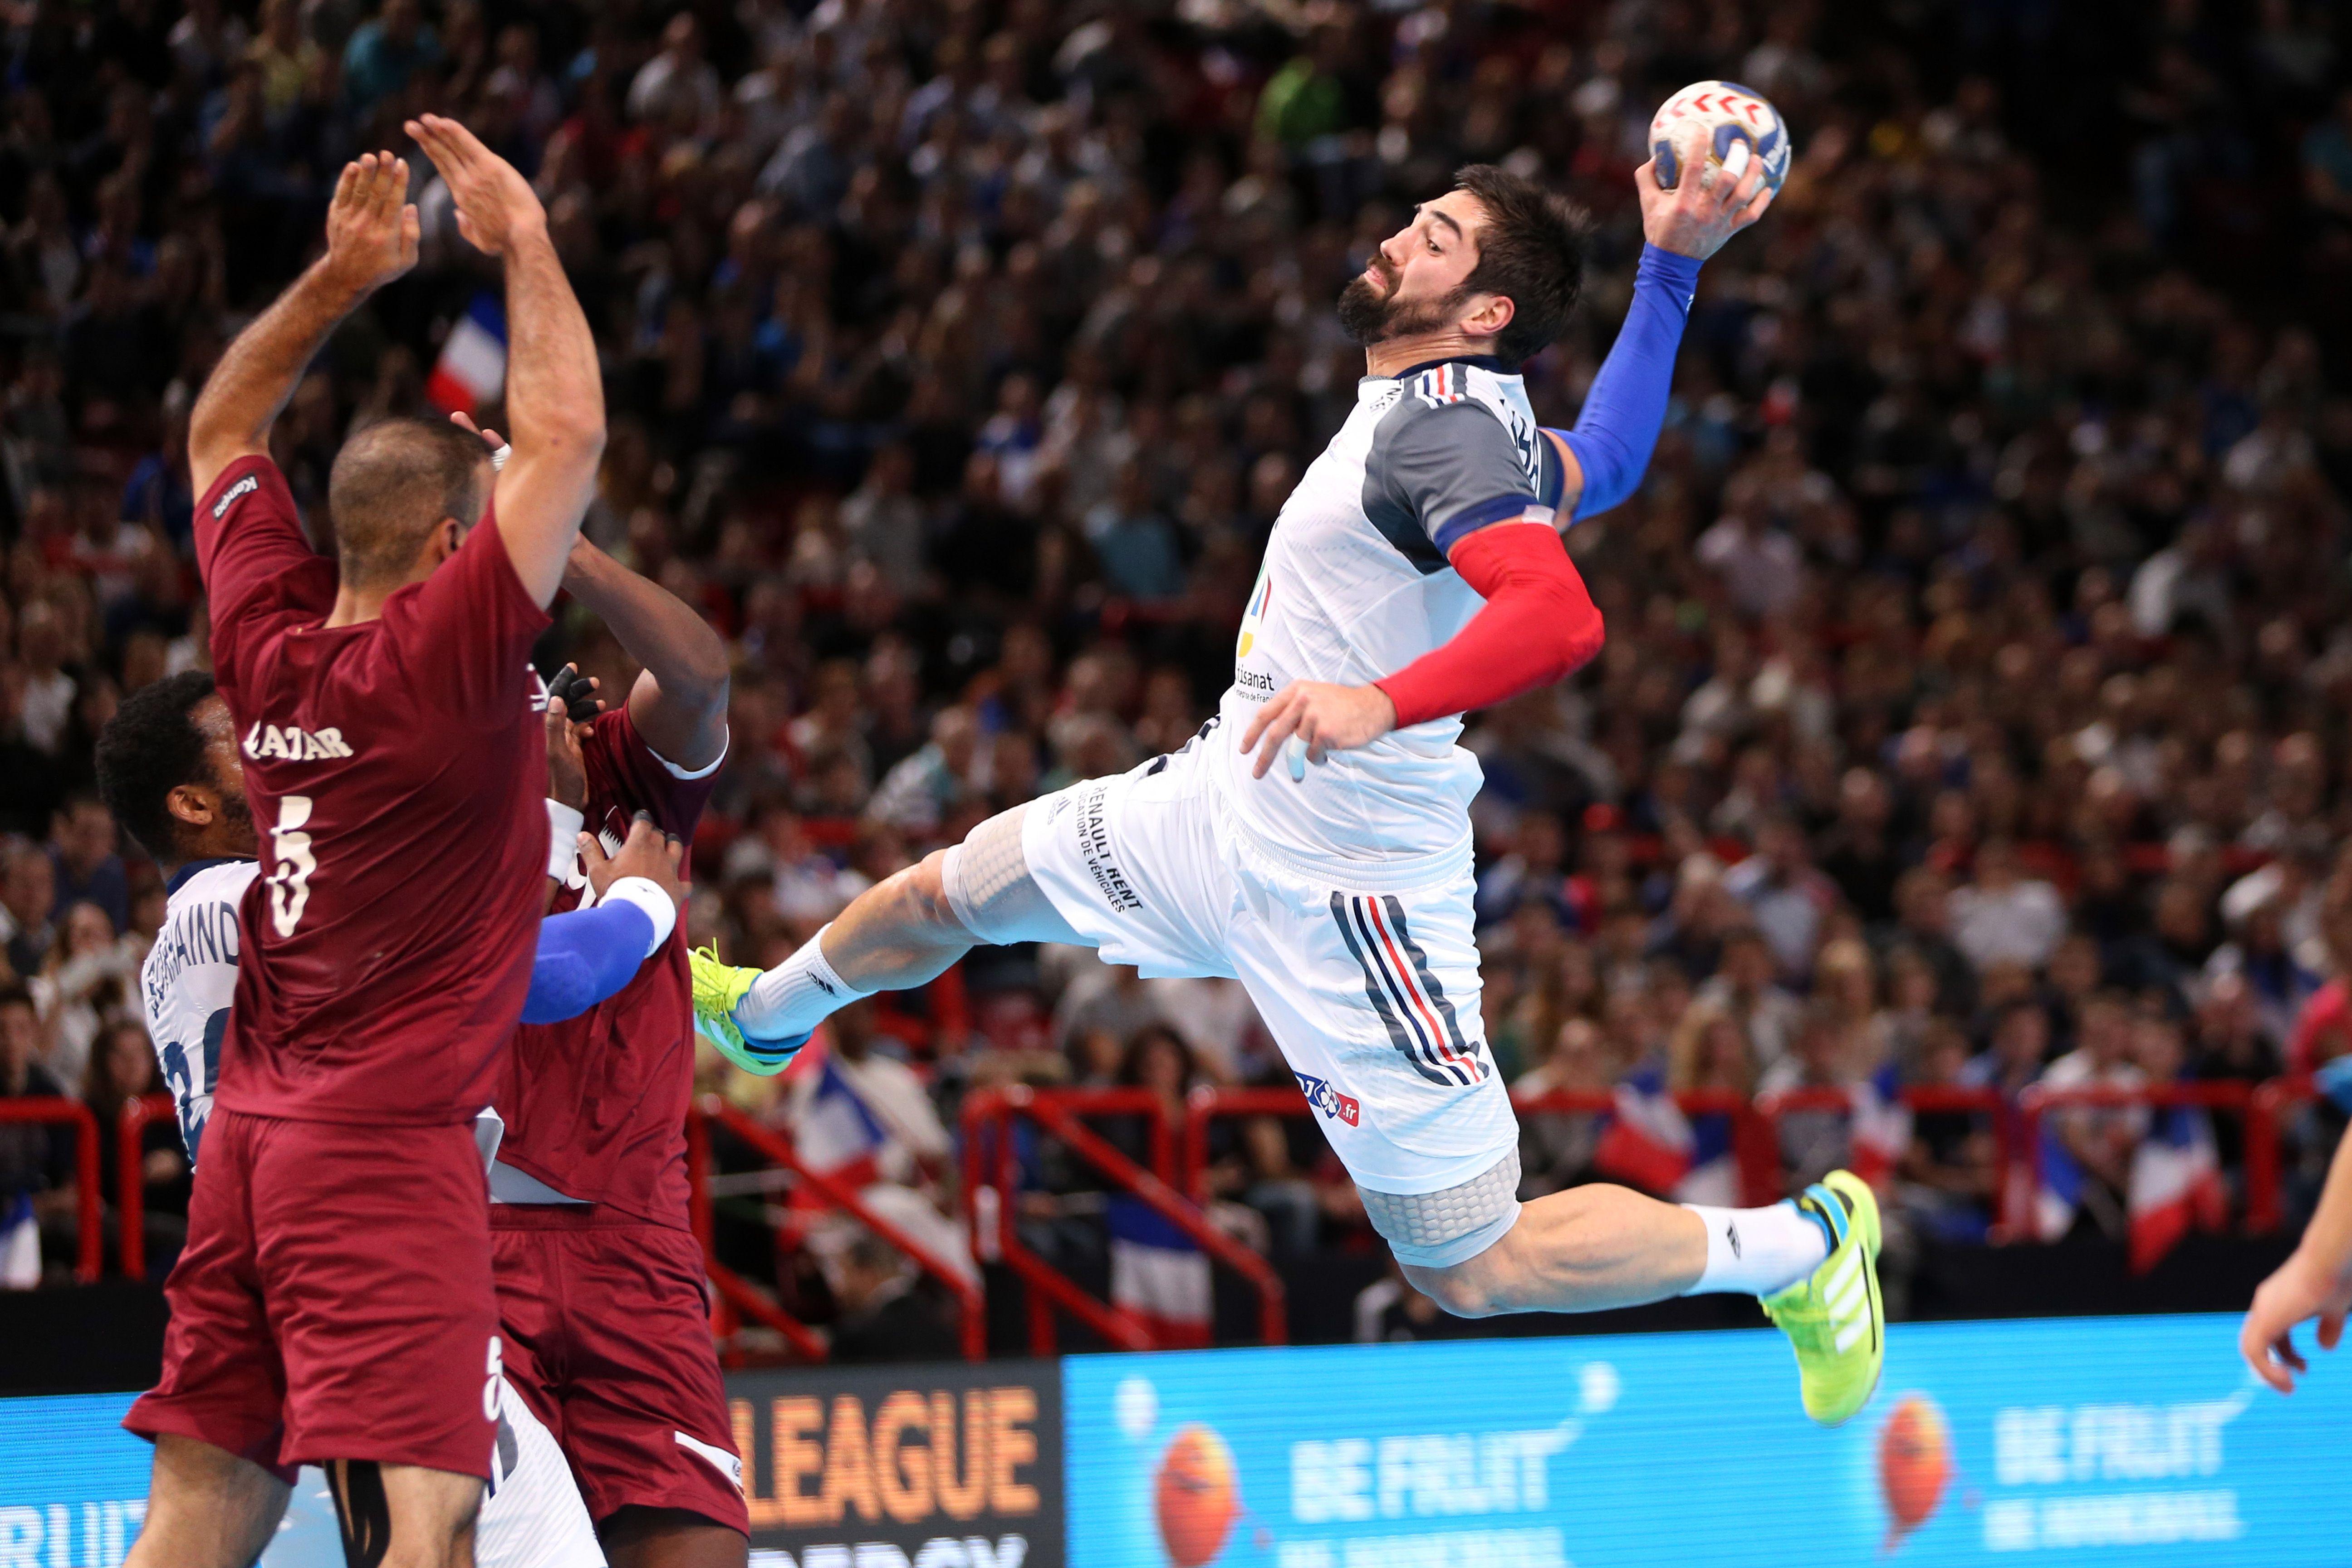 2592x2592px Handball (691.85 KB).05.2015